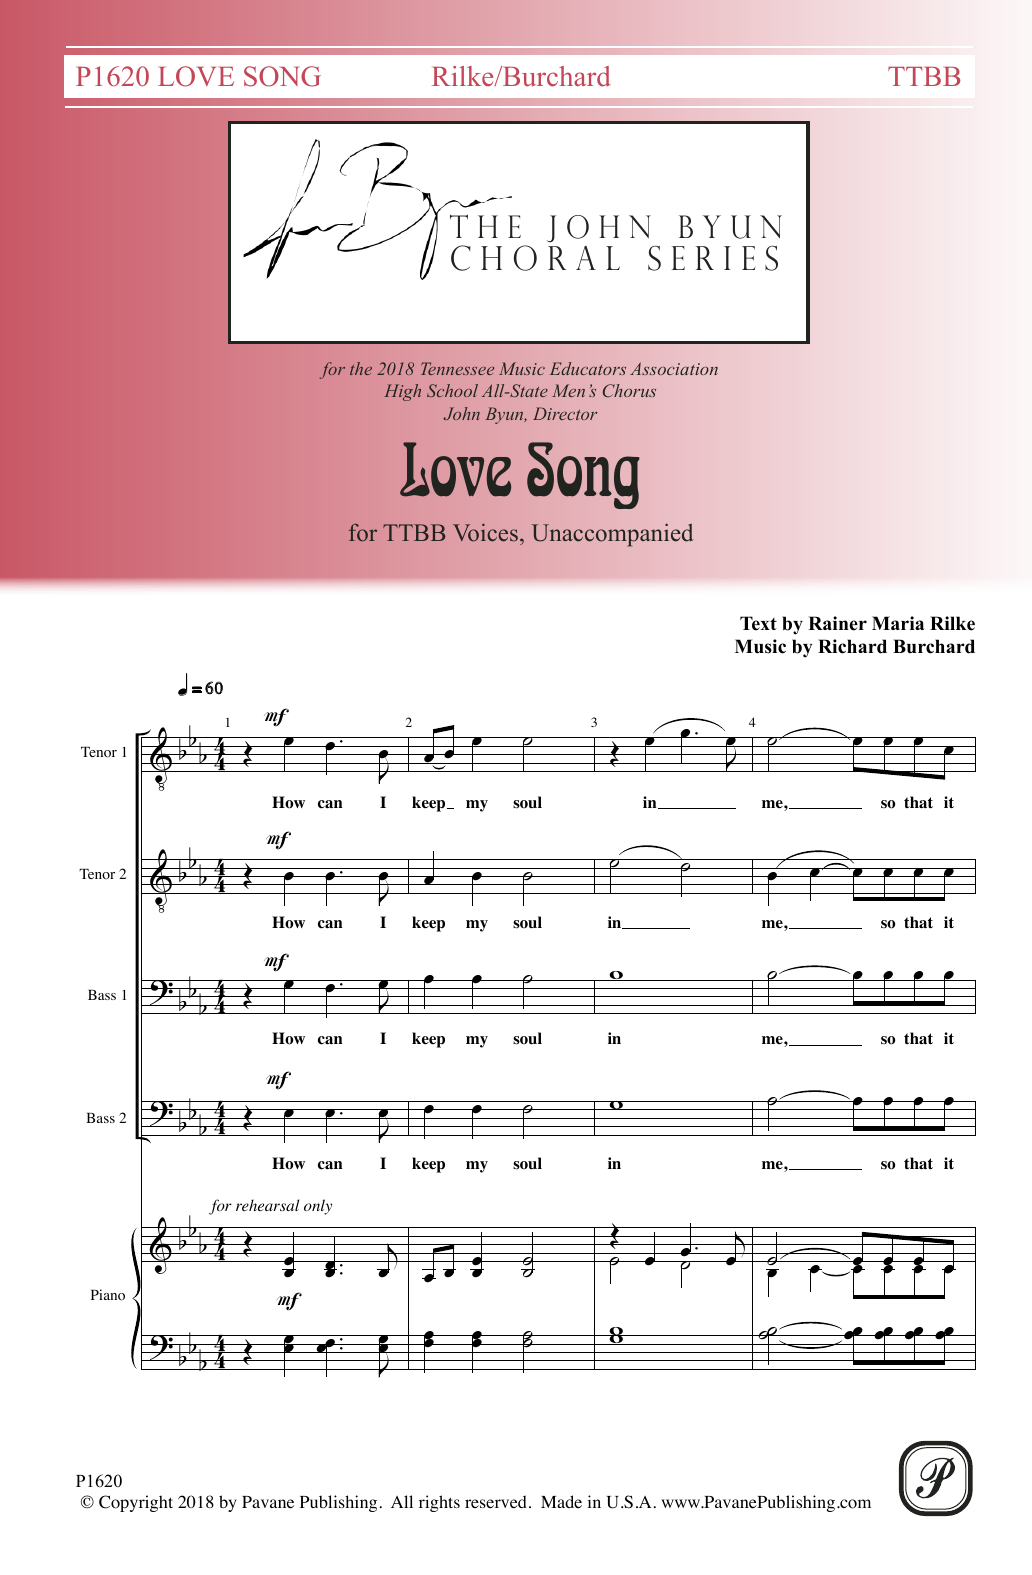 Rainer Maria Rilke Love Song Sheet Music Notes & Chords for TTBB Choir - Download or Print PDF